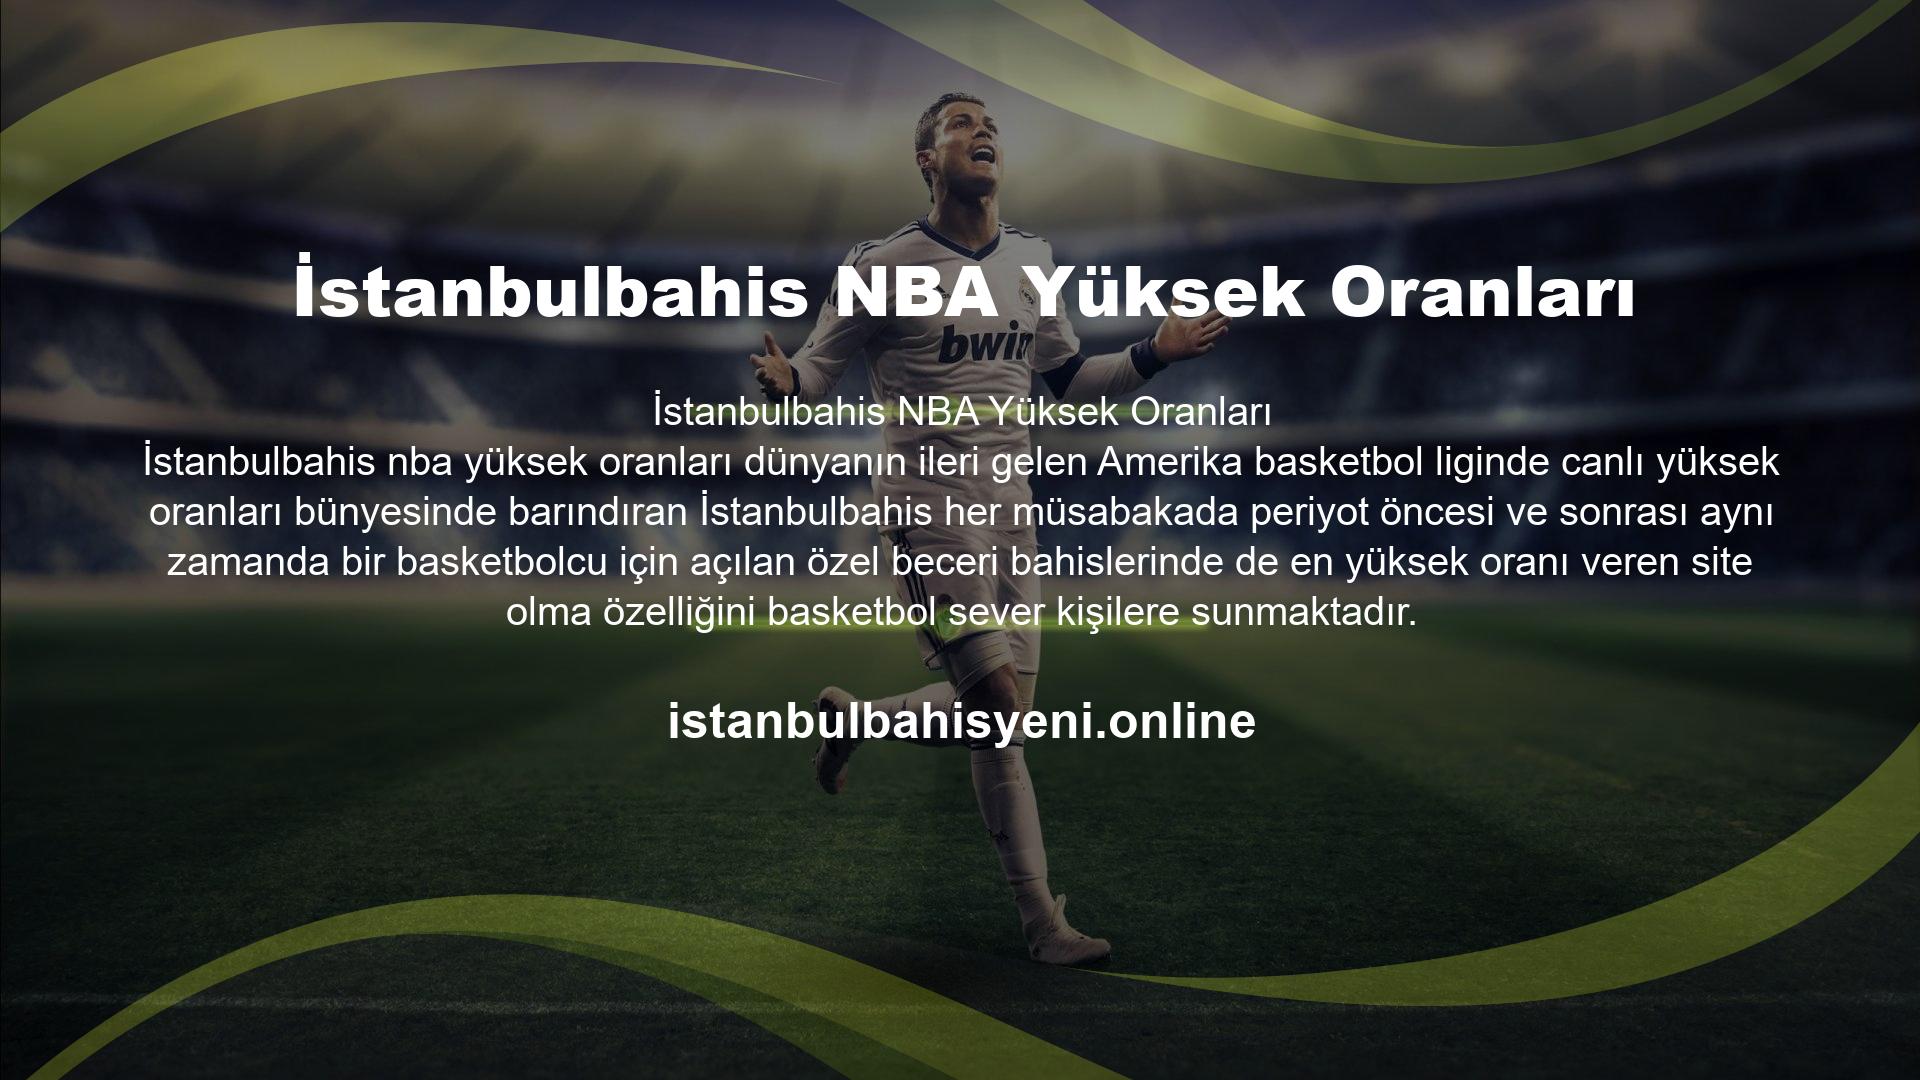 Her kitleye hitap ettiği gibi basketbola da hitap eden site İstanbulbahis en yüksek oranlı bahisler özelliğini burada da gözler önüne sermektedir